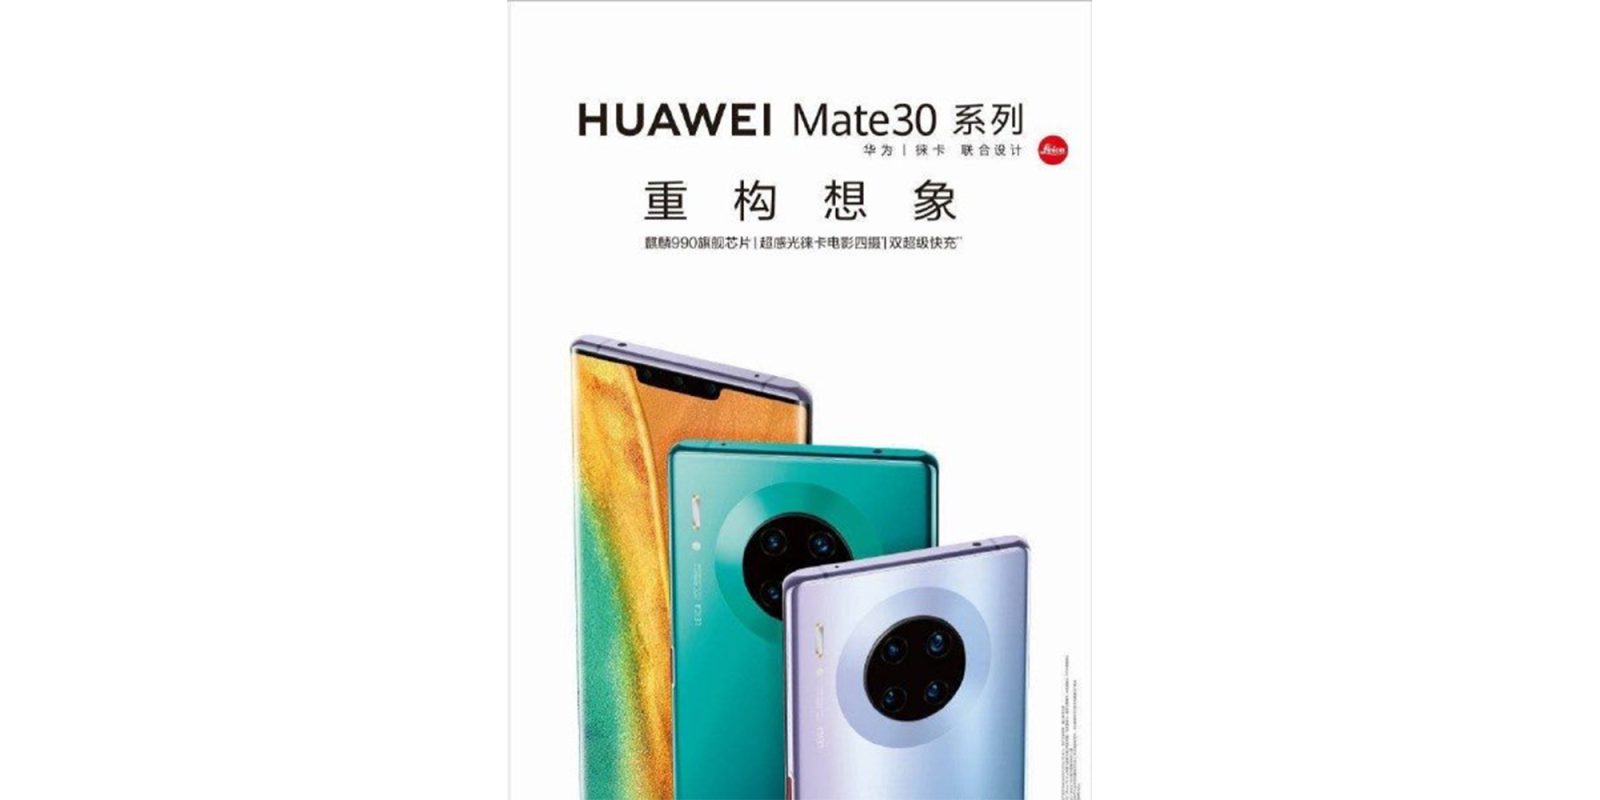 Huawei доведеться відкласти глобальний запуск Mate 30 через санкції США та Google